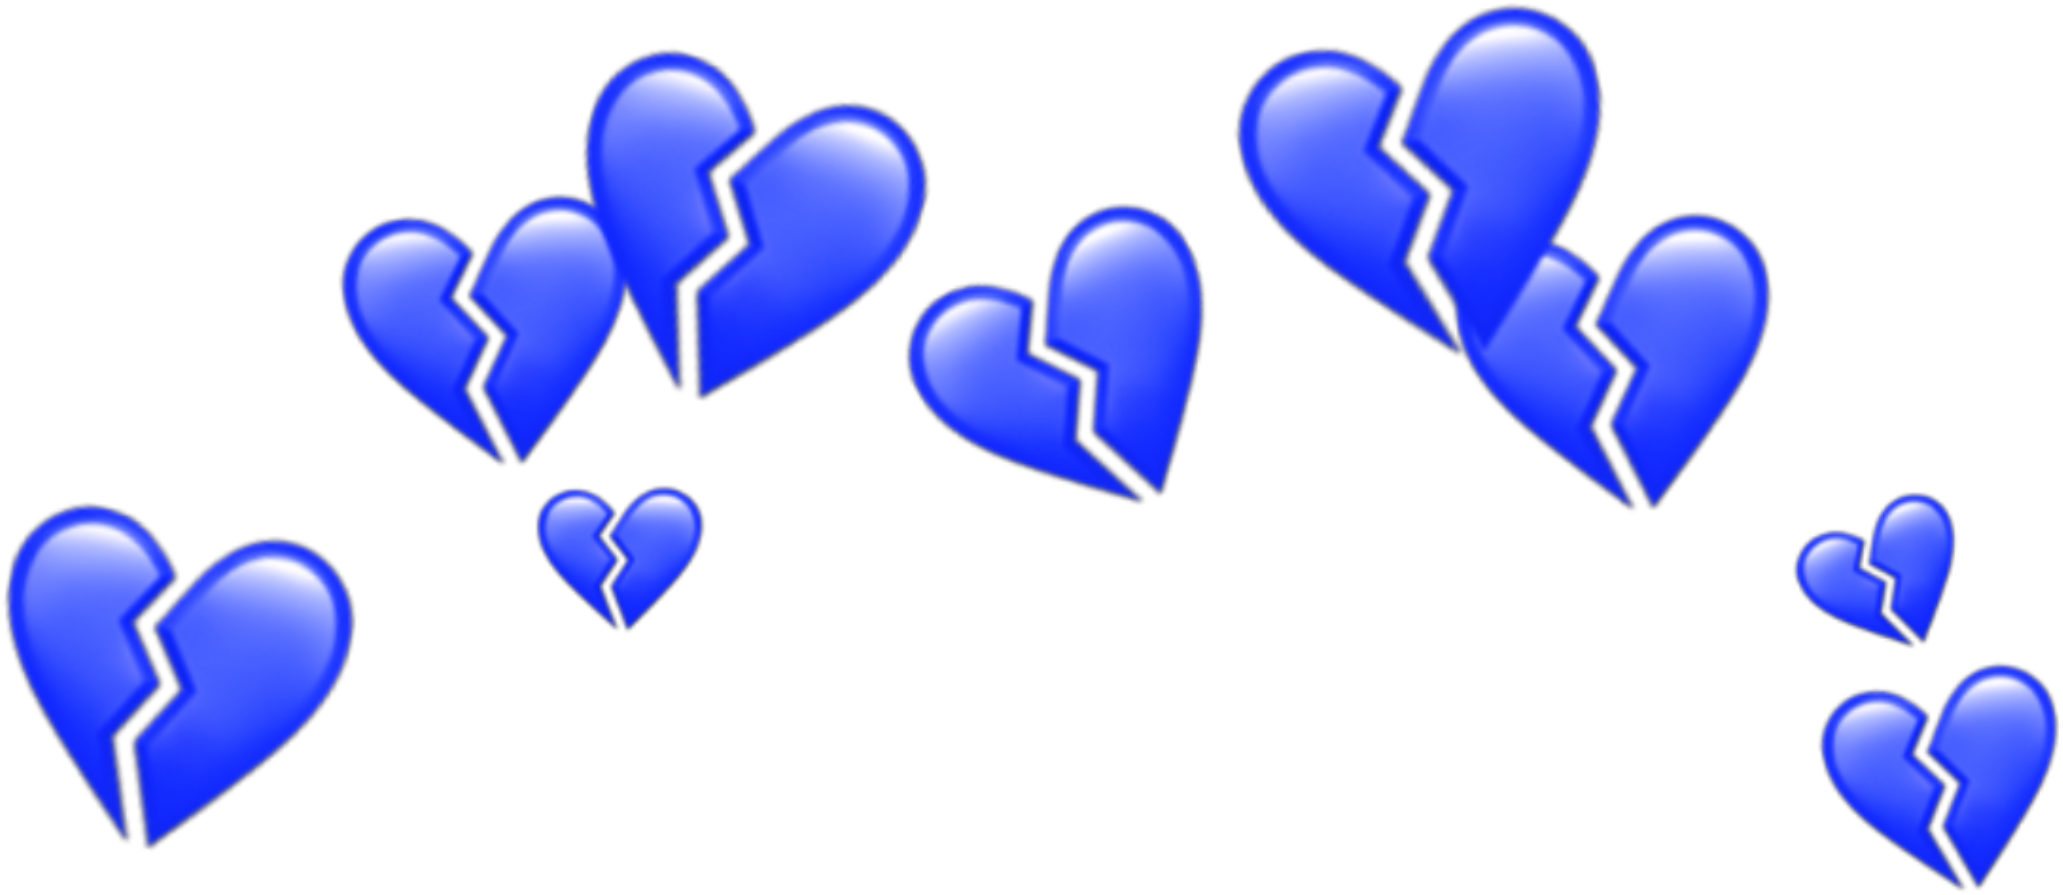 Синий синий над головой. Синее сердечко. Голубое сердечко. Синие сердечки на прозрачном фоне. Синие сердечки над головой.